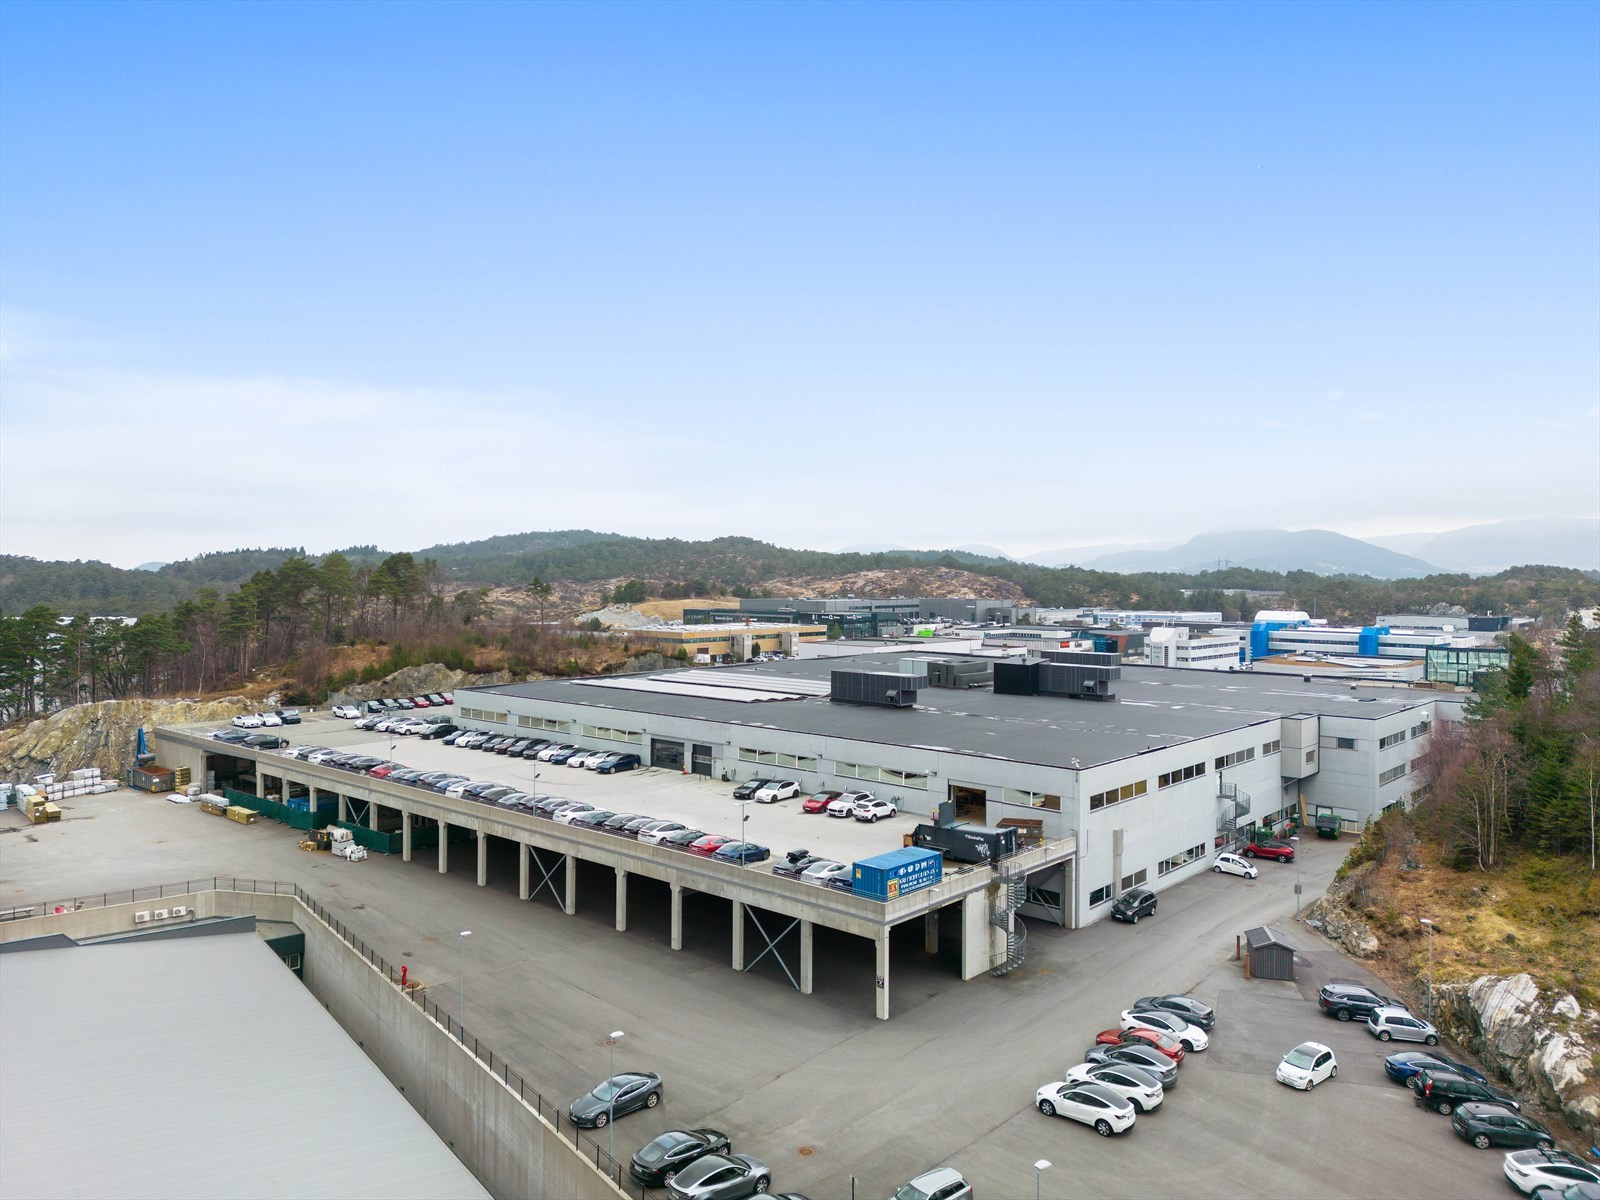 De ledige handelslokalene, BTA 1590 m², er klare for innredning til ny leietaker